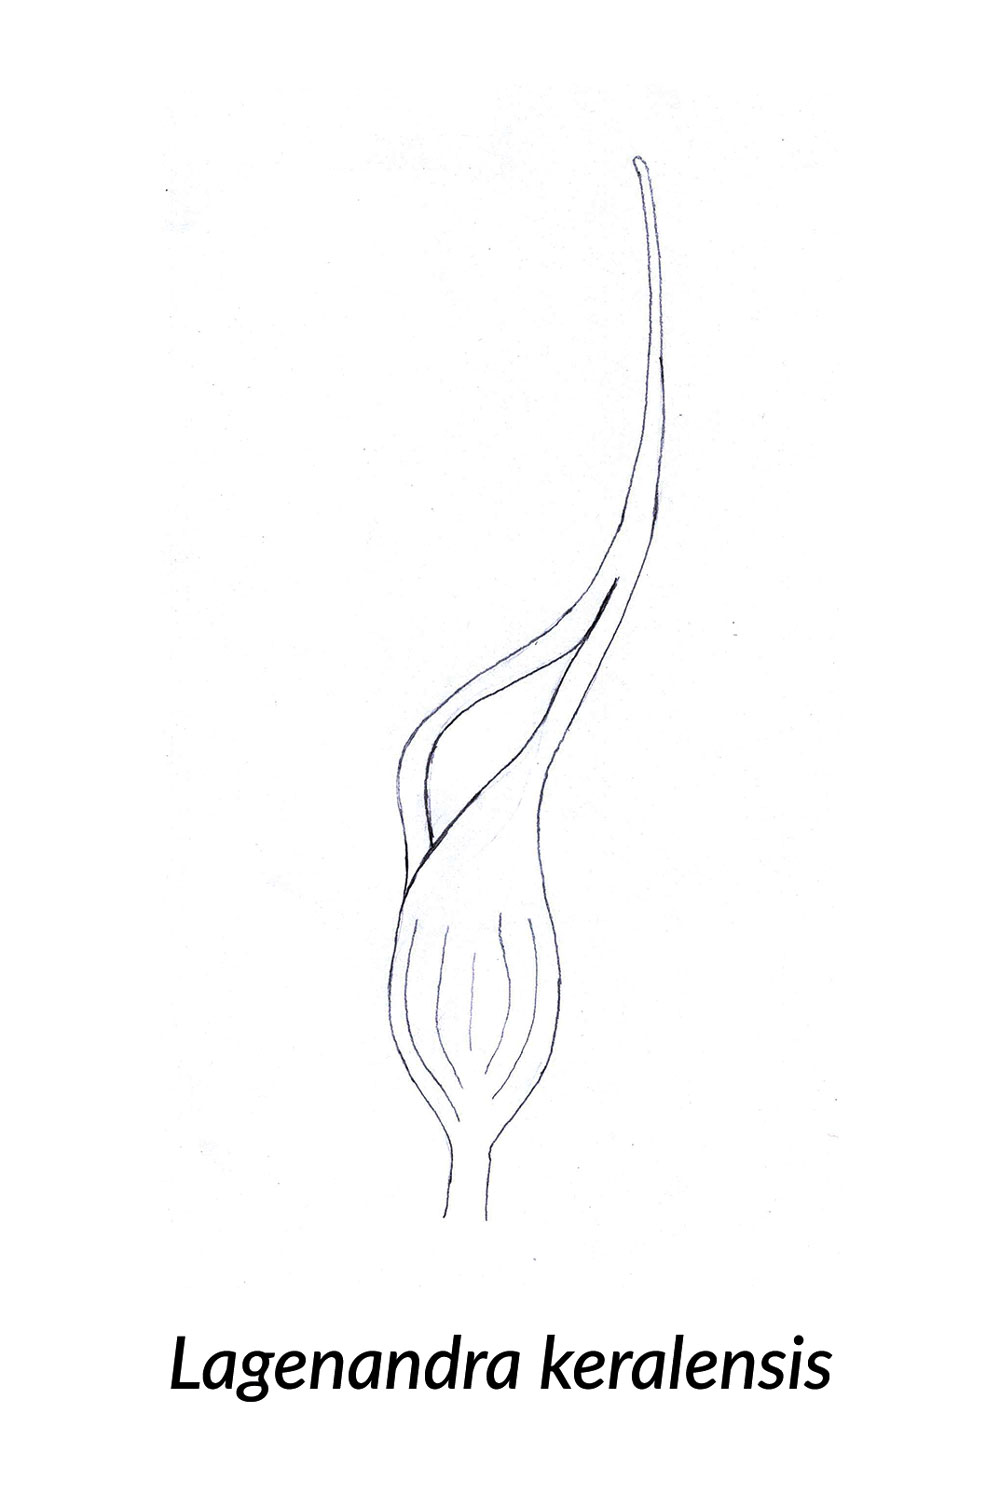 Skizze einer Spatha von Lagenandra keralensis